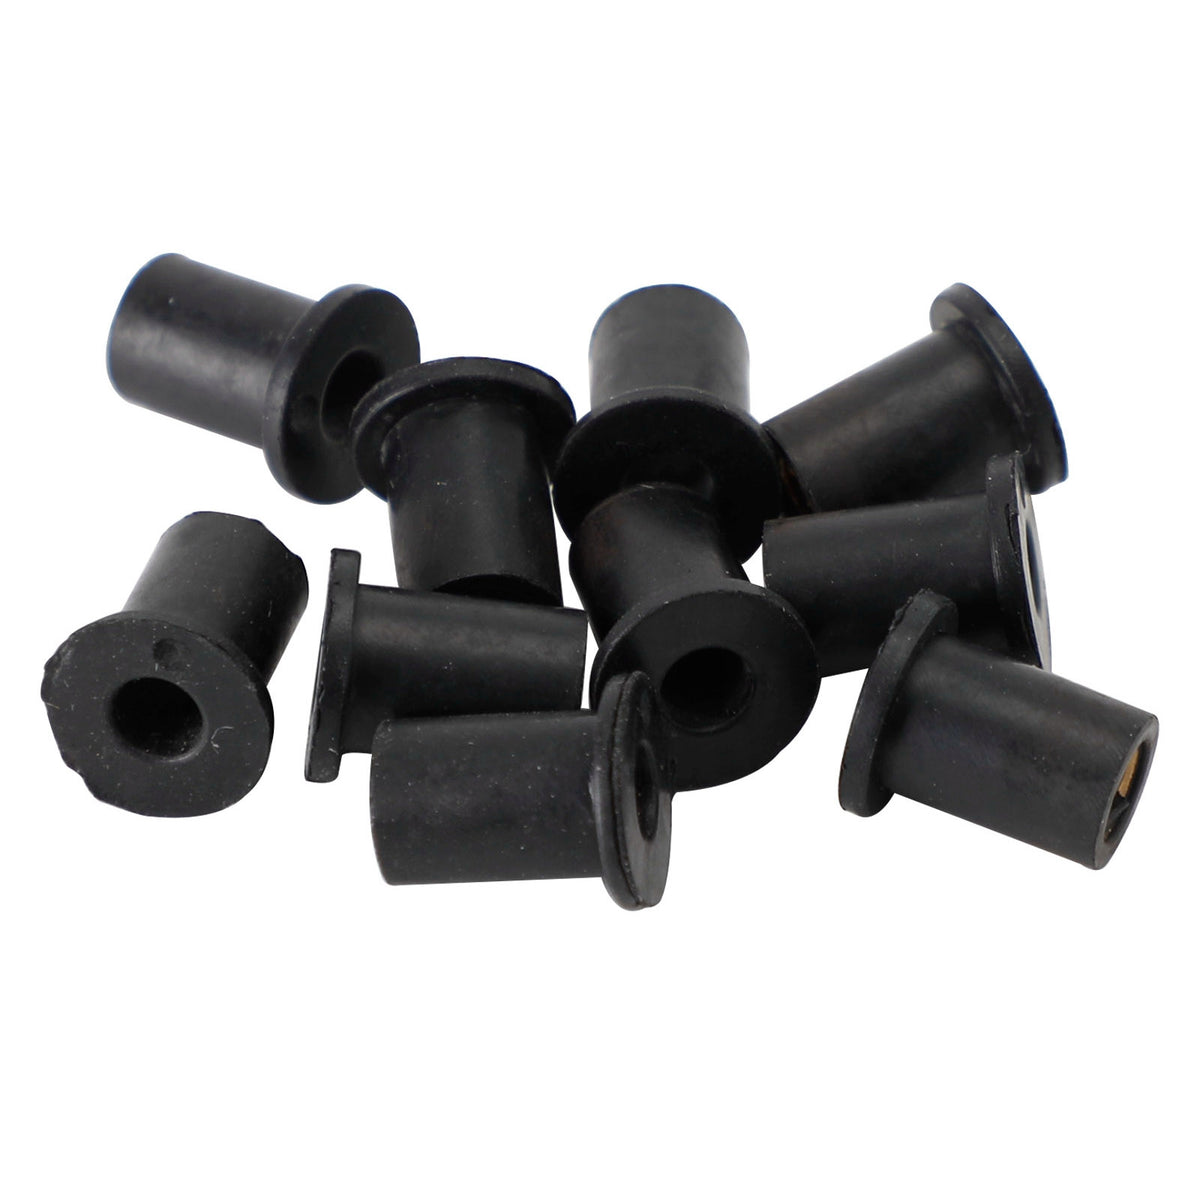 10 Stück M4 Gummi-Wellmuttern für Windschutzscheibe und Verkleidung, 8 mm 5/16 Zoll Wellmuttern